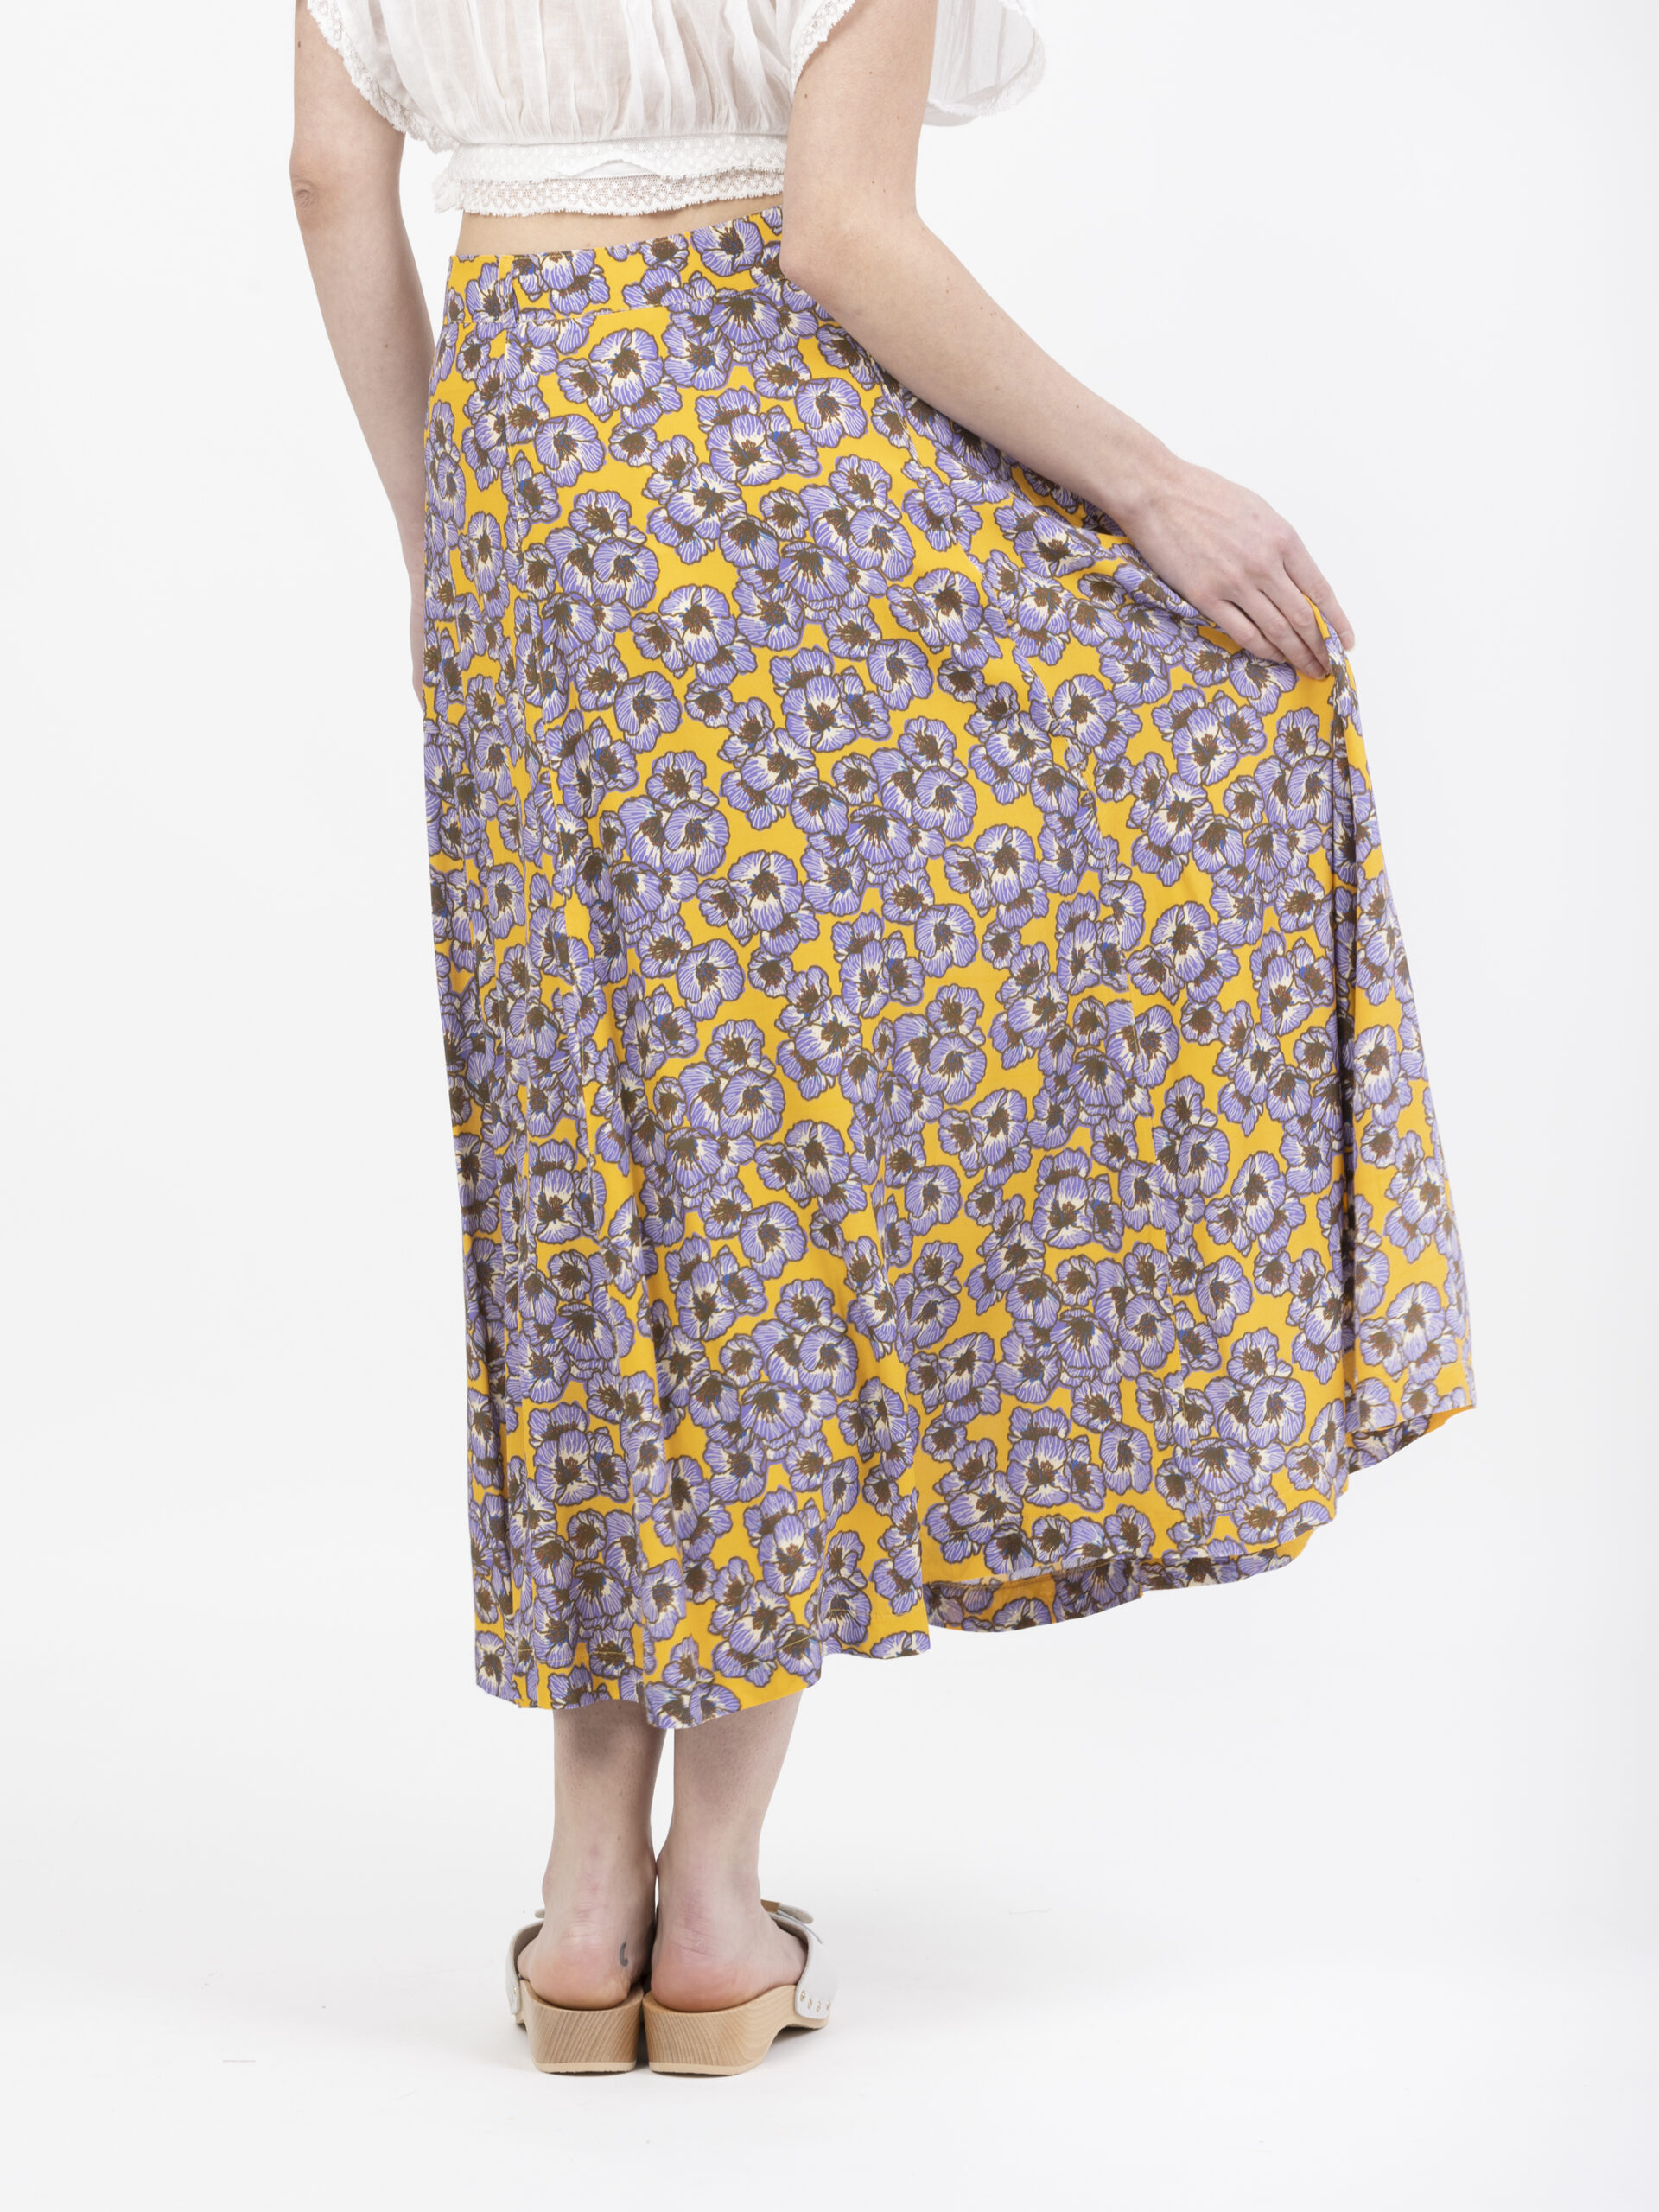 juvenille-floral-skirt-petite-francaise-matchboxathens-shop-online-athens-boutique